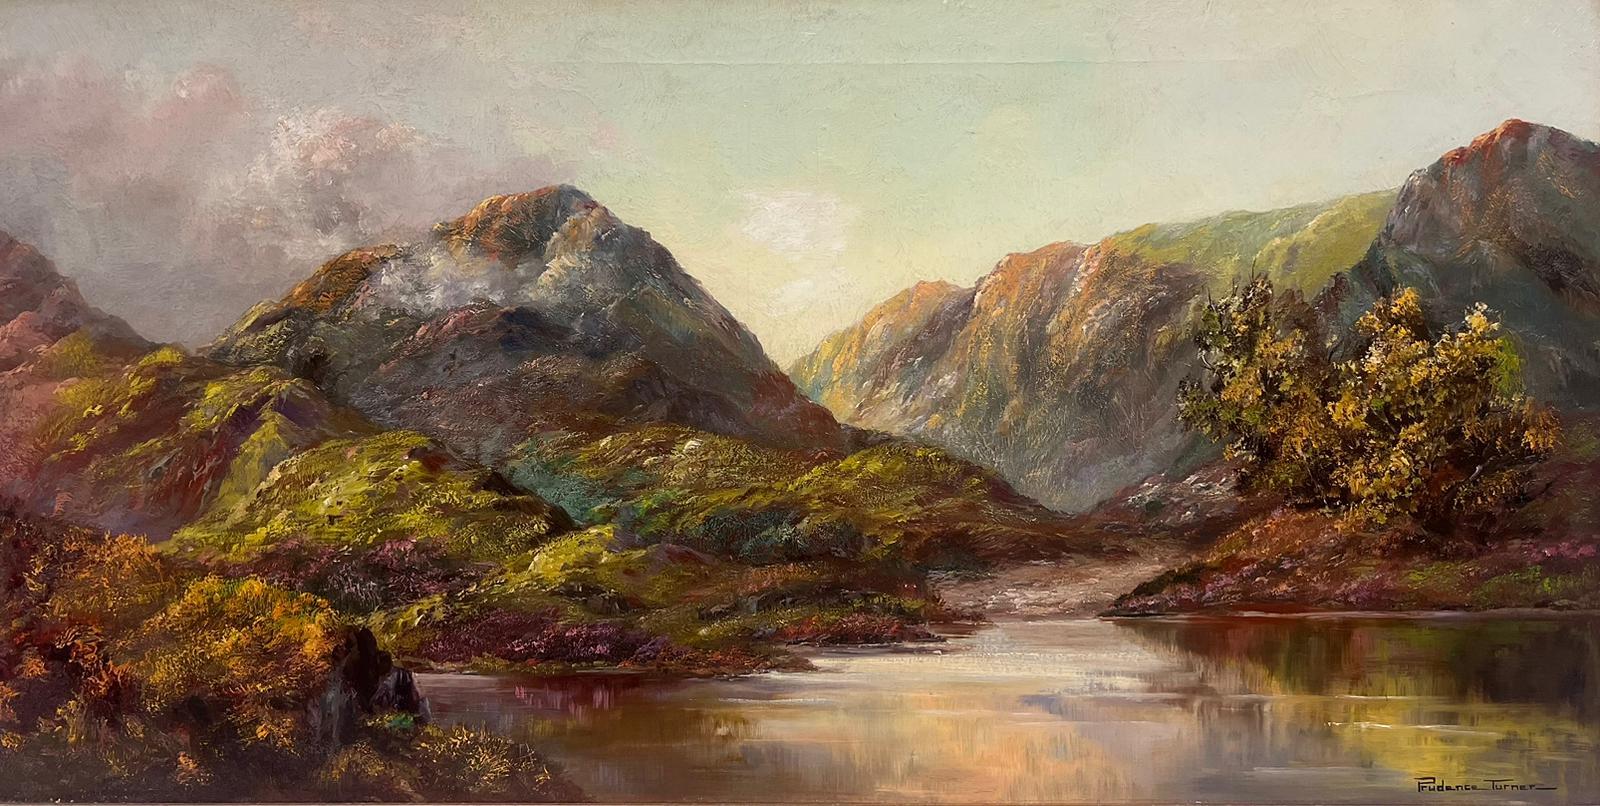 Loch Baddagyle, schottische Highlands, signiertes Ölgemälde, gelisteter britischer Künstler – Painting von Prudence Turner